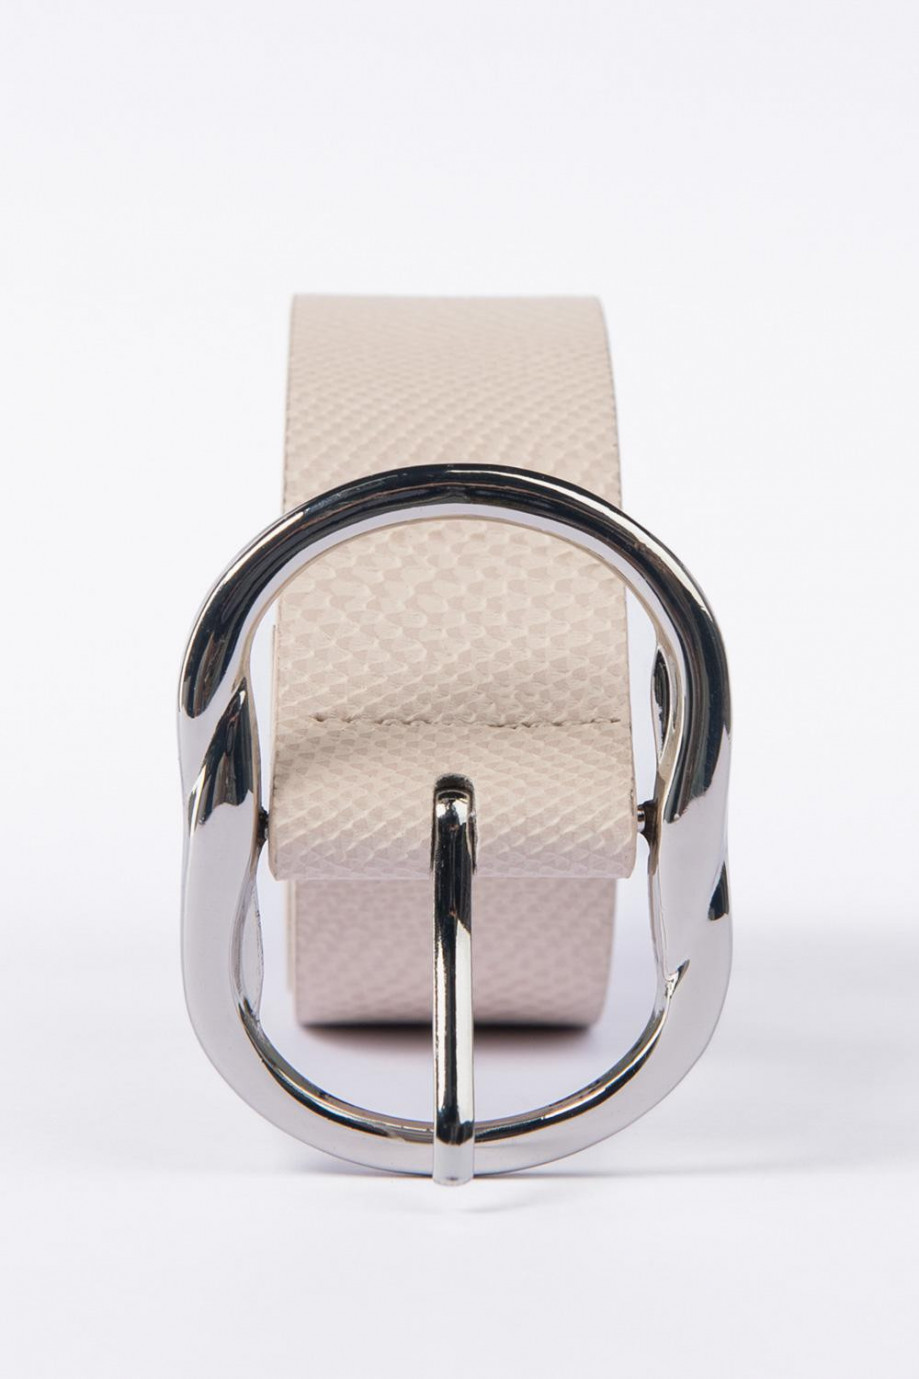 Cinturón crema claro con texturas y hebilla plateada metálica